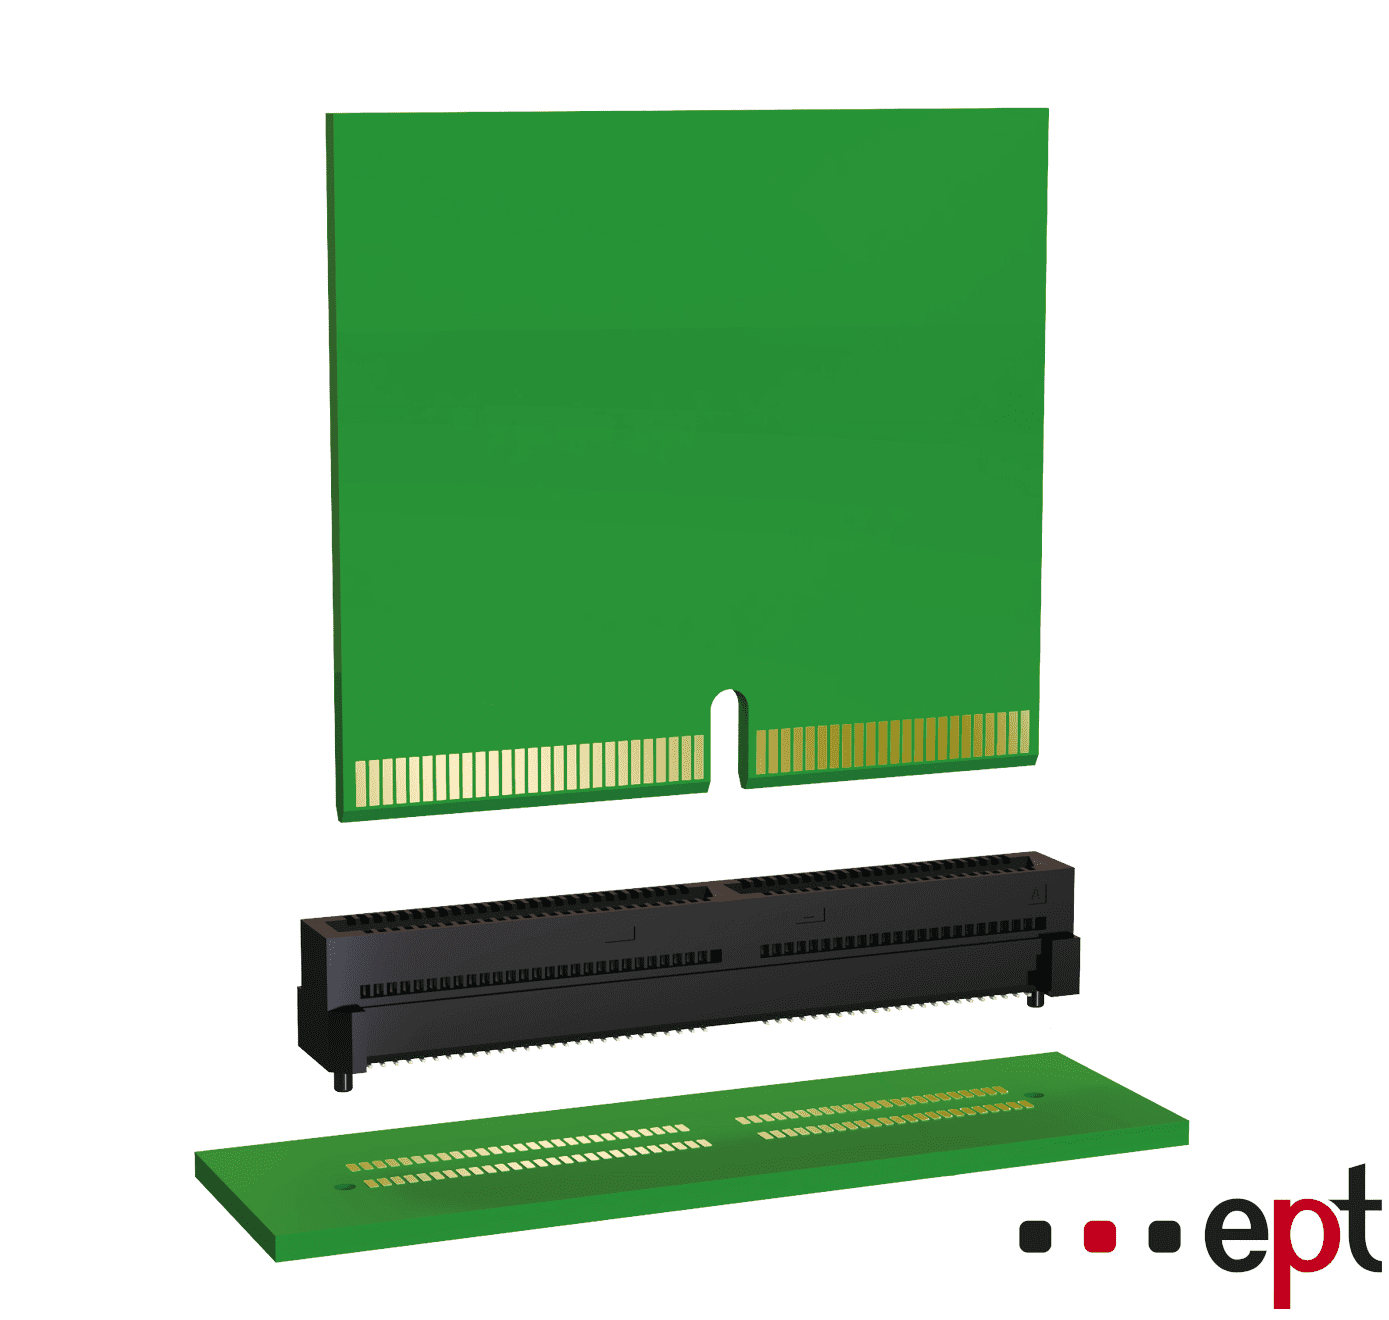 ept’s EC.8 edge card connectors